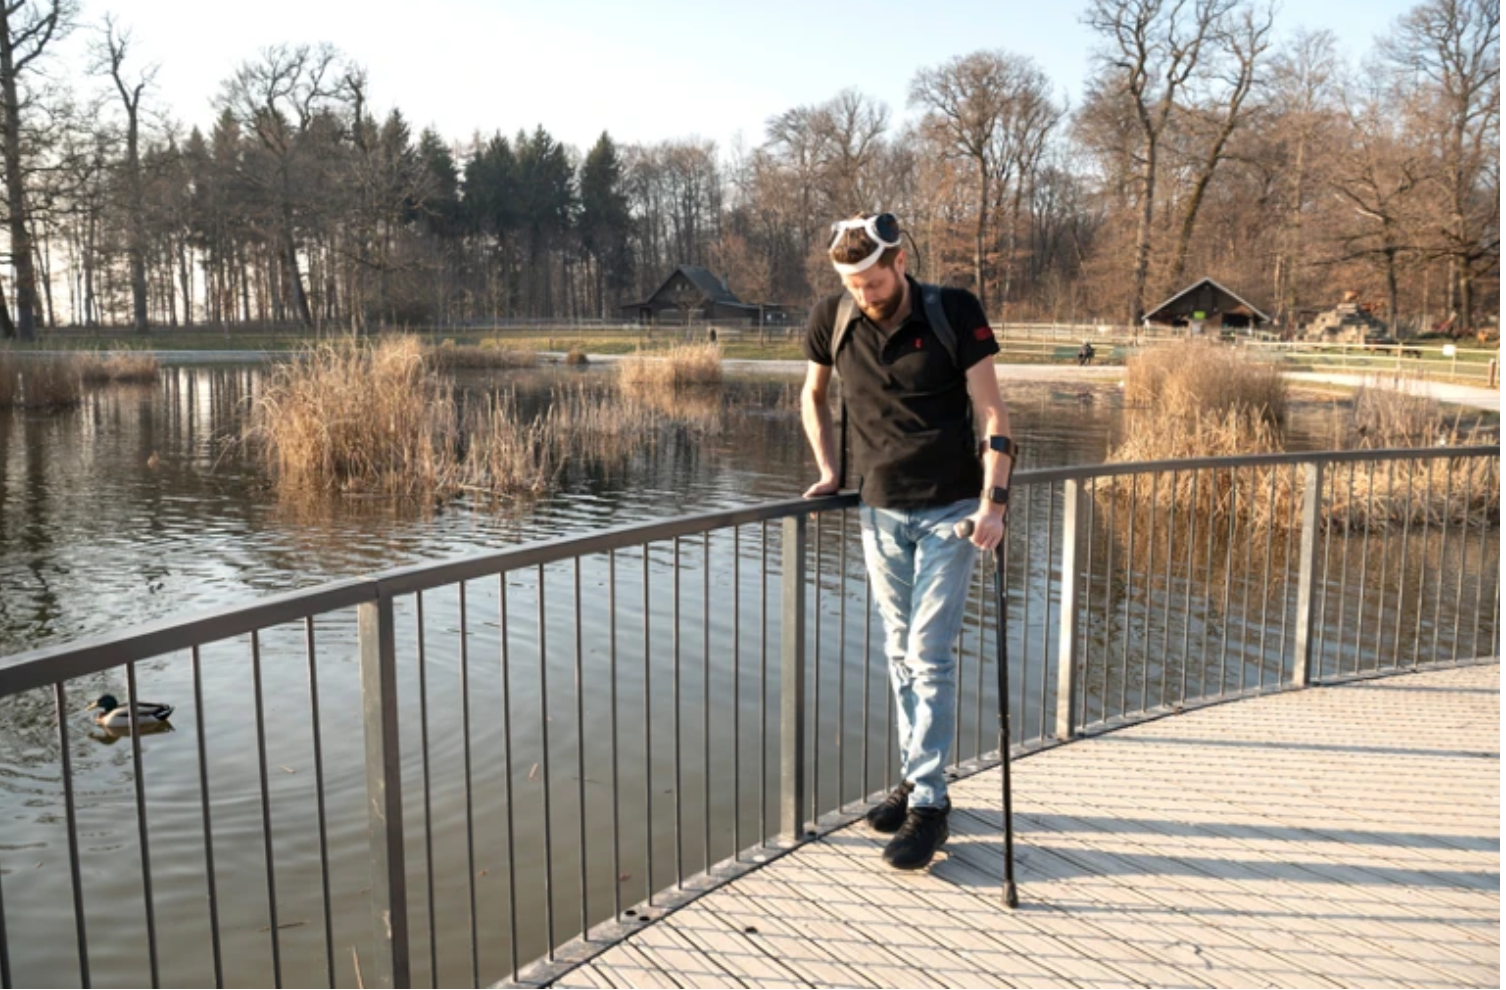 Brain-spine interface allows paraplegic man to walk